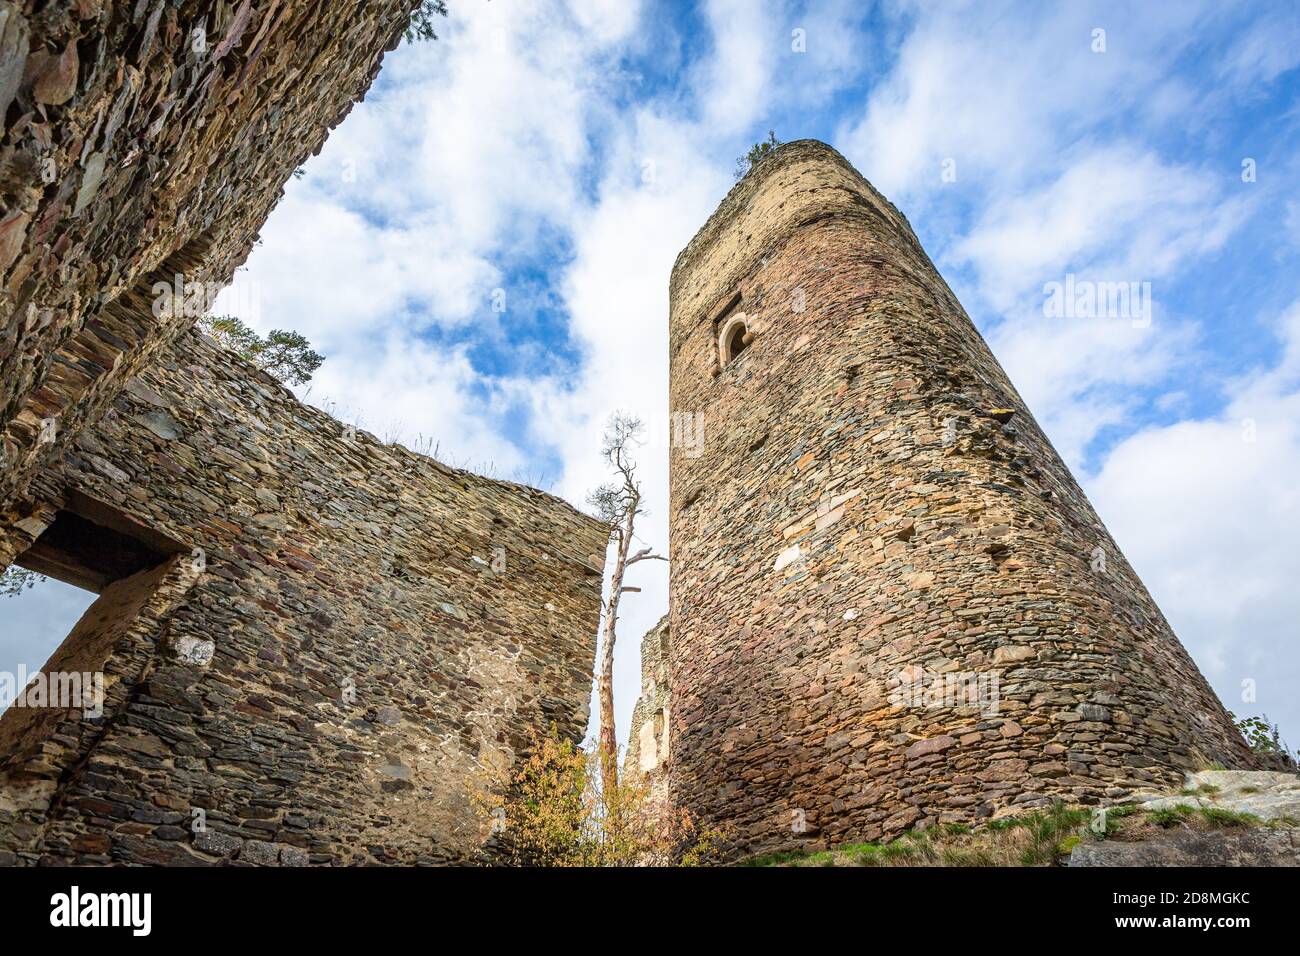 Gutstejn / Tschechische Republik - Oktober 10 2020: Blick von unten auf einen hohen Steinturm und eine Mauer, ein Teil der Ruine der mittelalterlichen gotischen Burg. Stockfoto